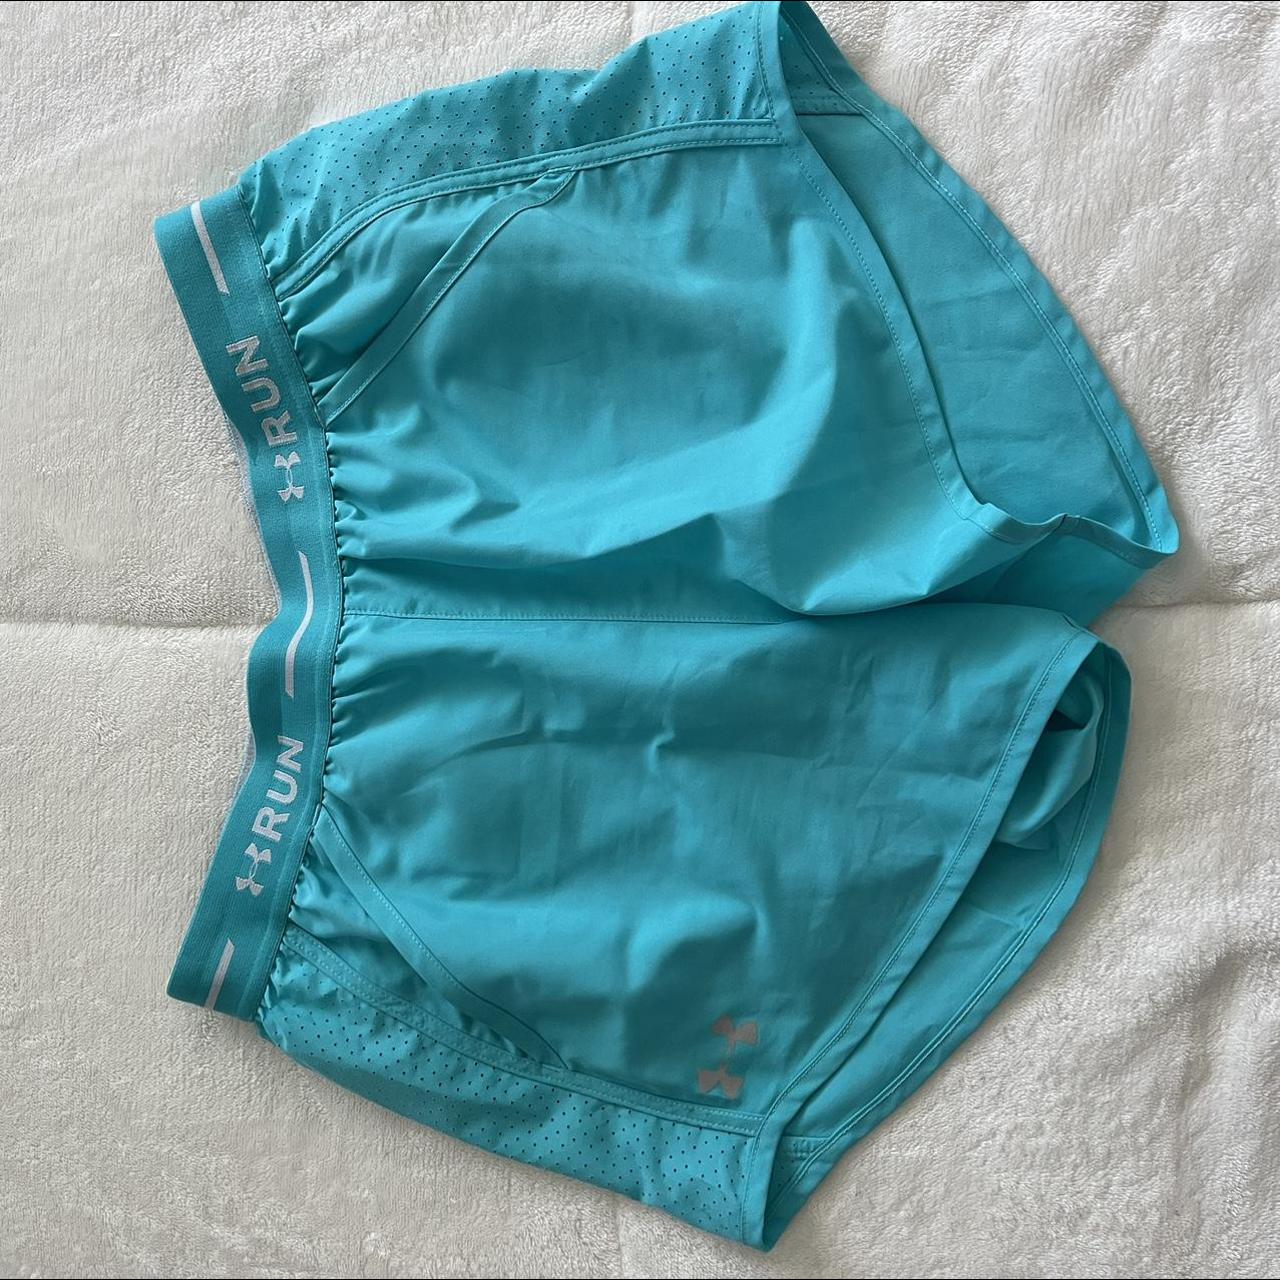 Under Armour Women's Blue Shorts | Depop